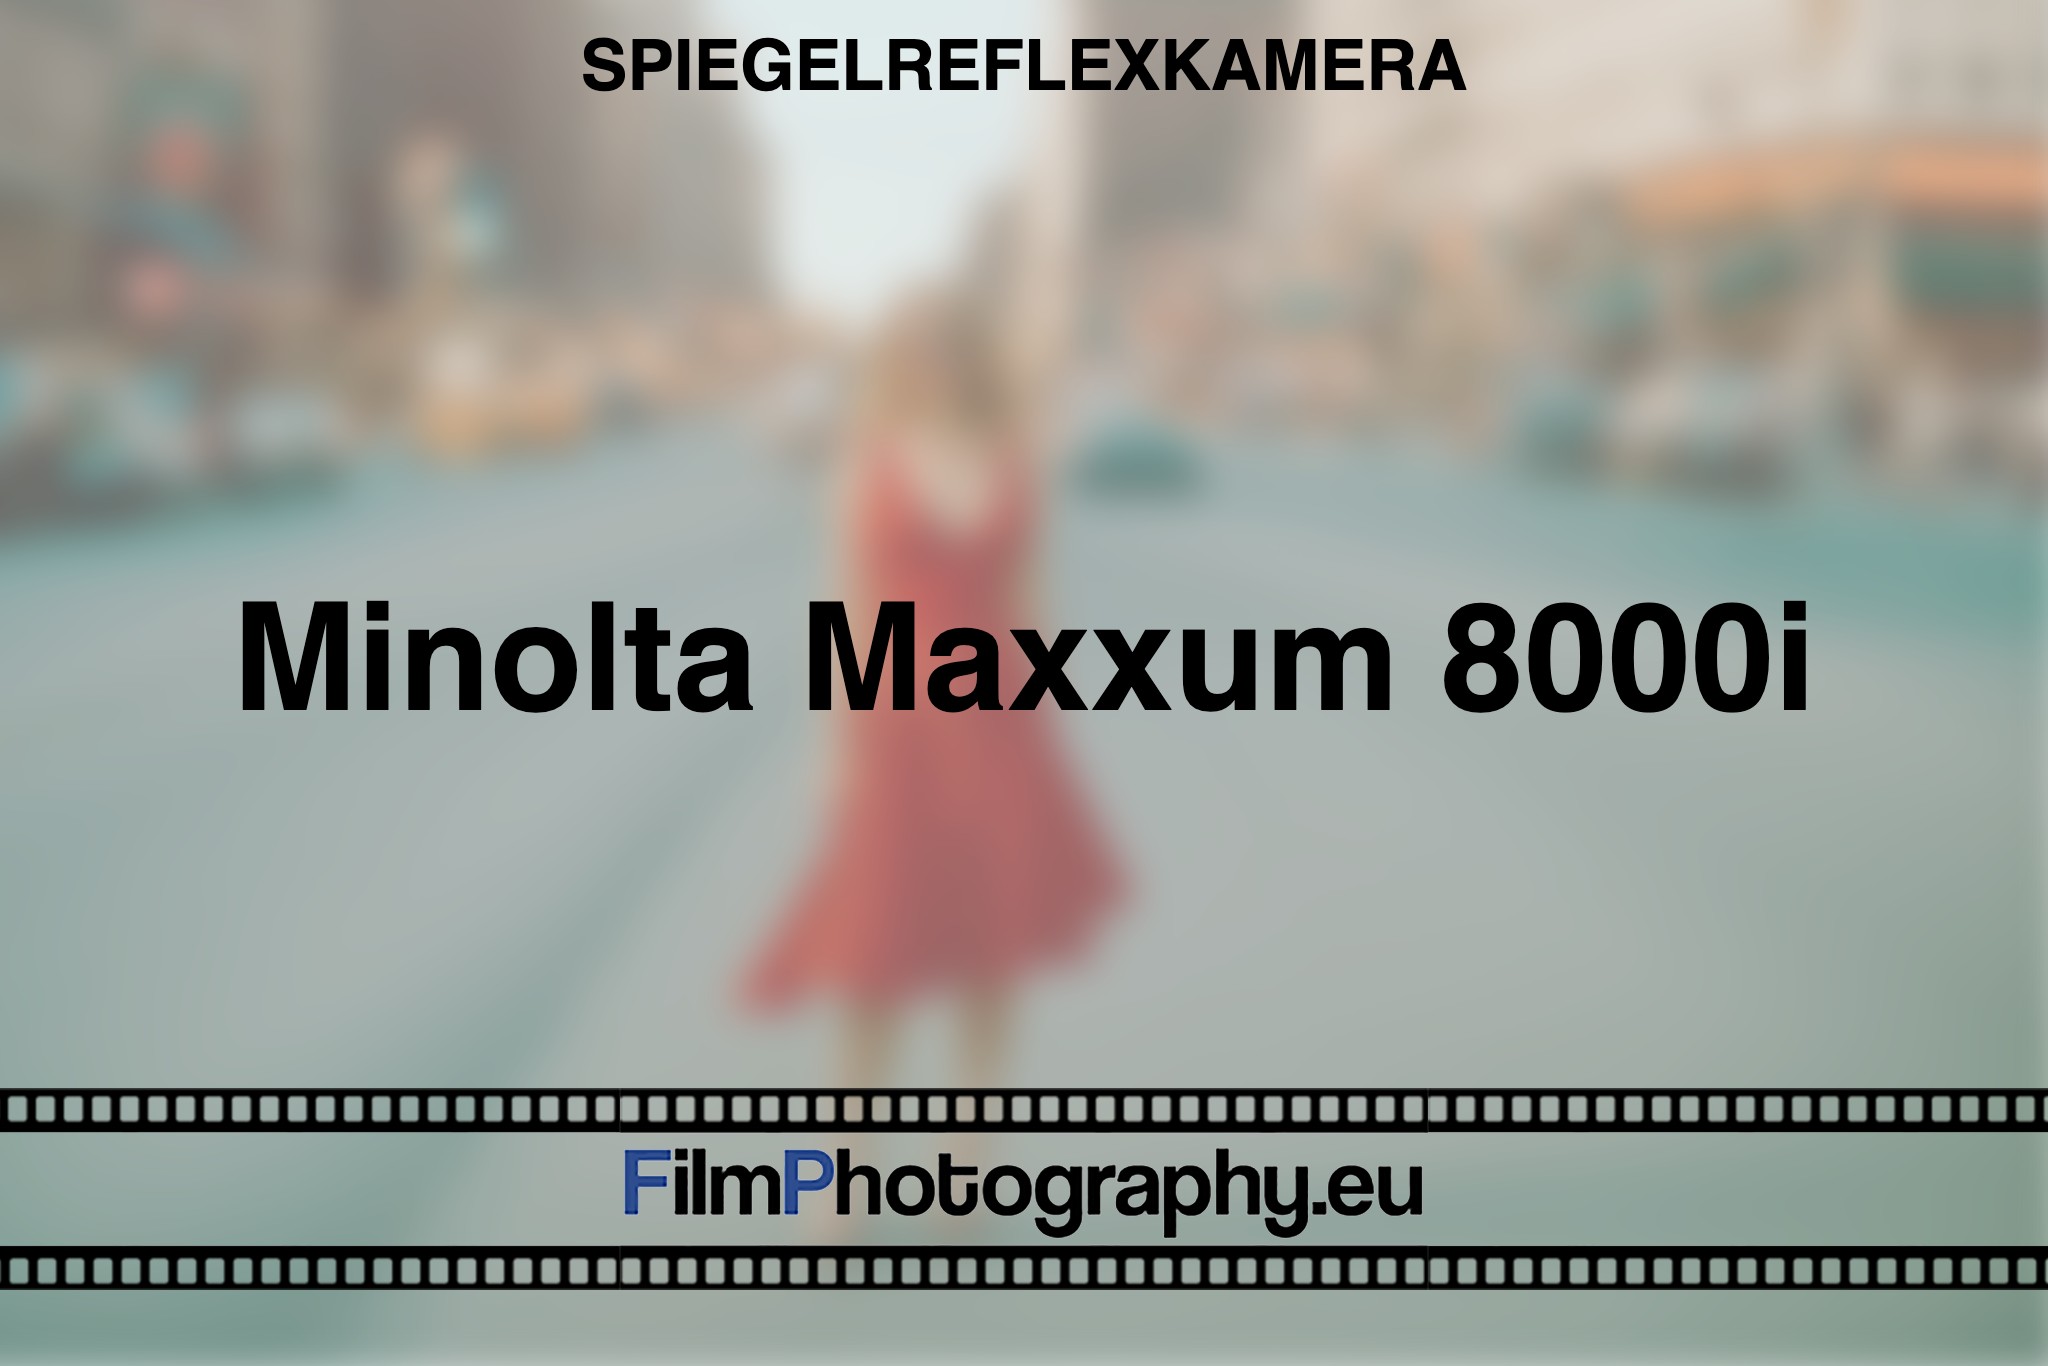 minolta-maxxum-8000i-spiegelreflexkamera-bnv